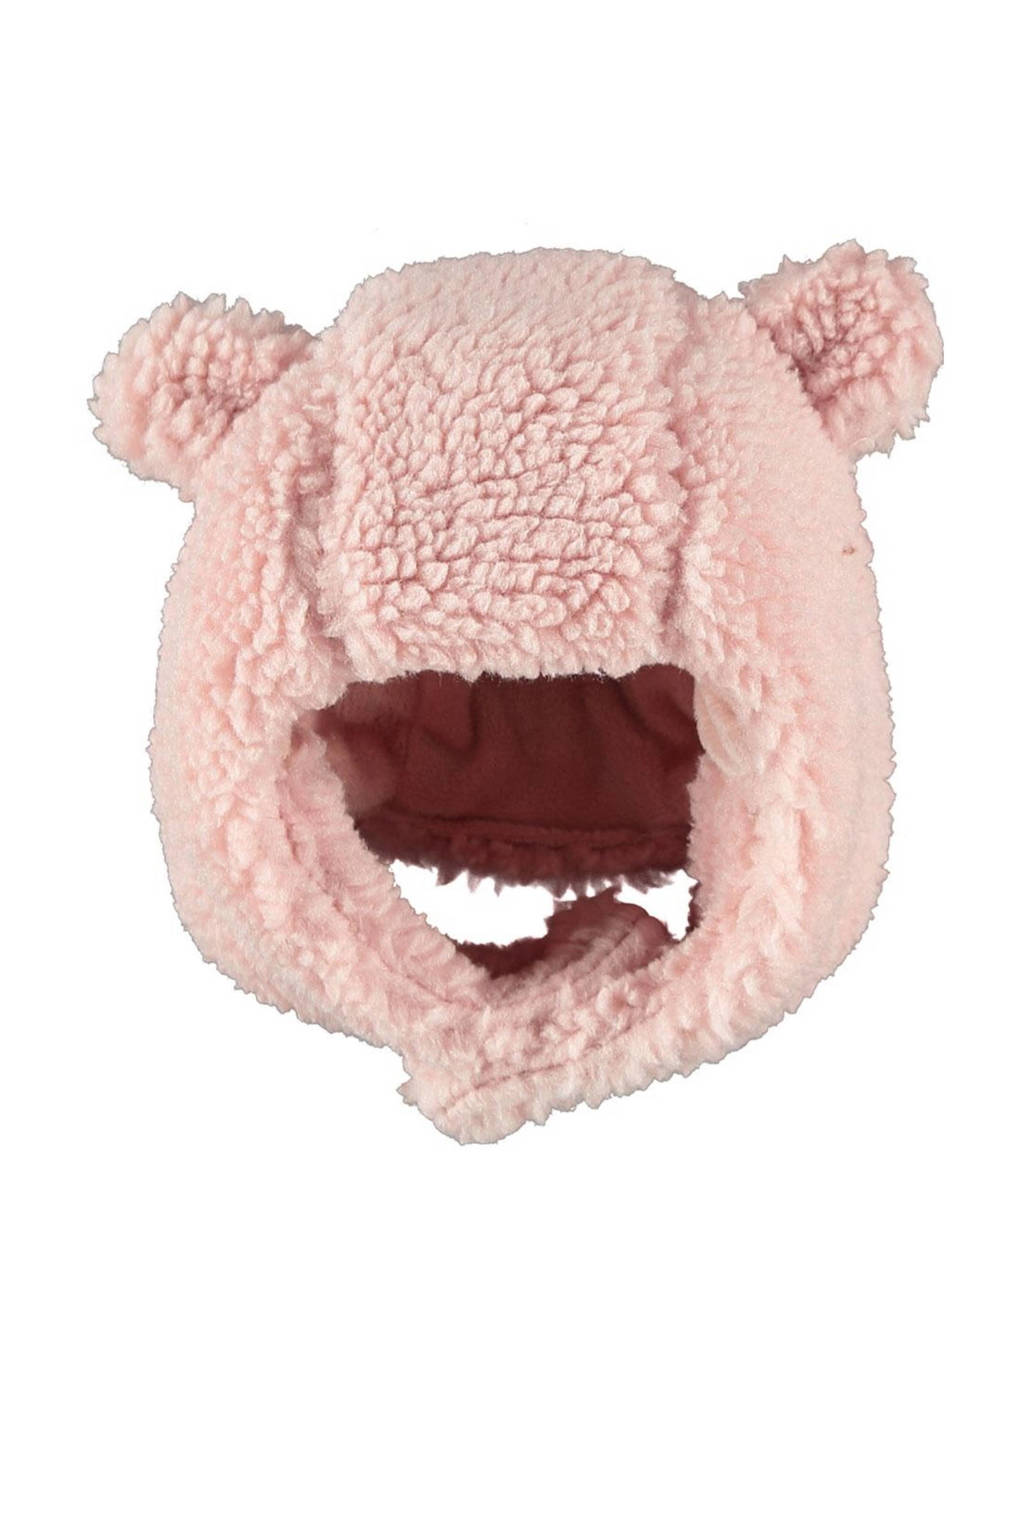 Sarlini teddy muts met oortjes roze, Lichtroze